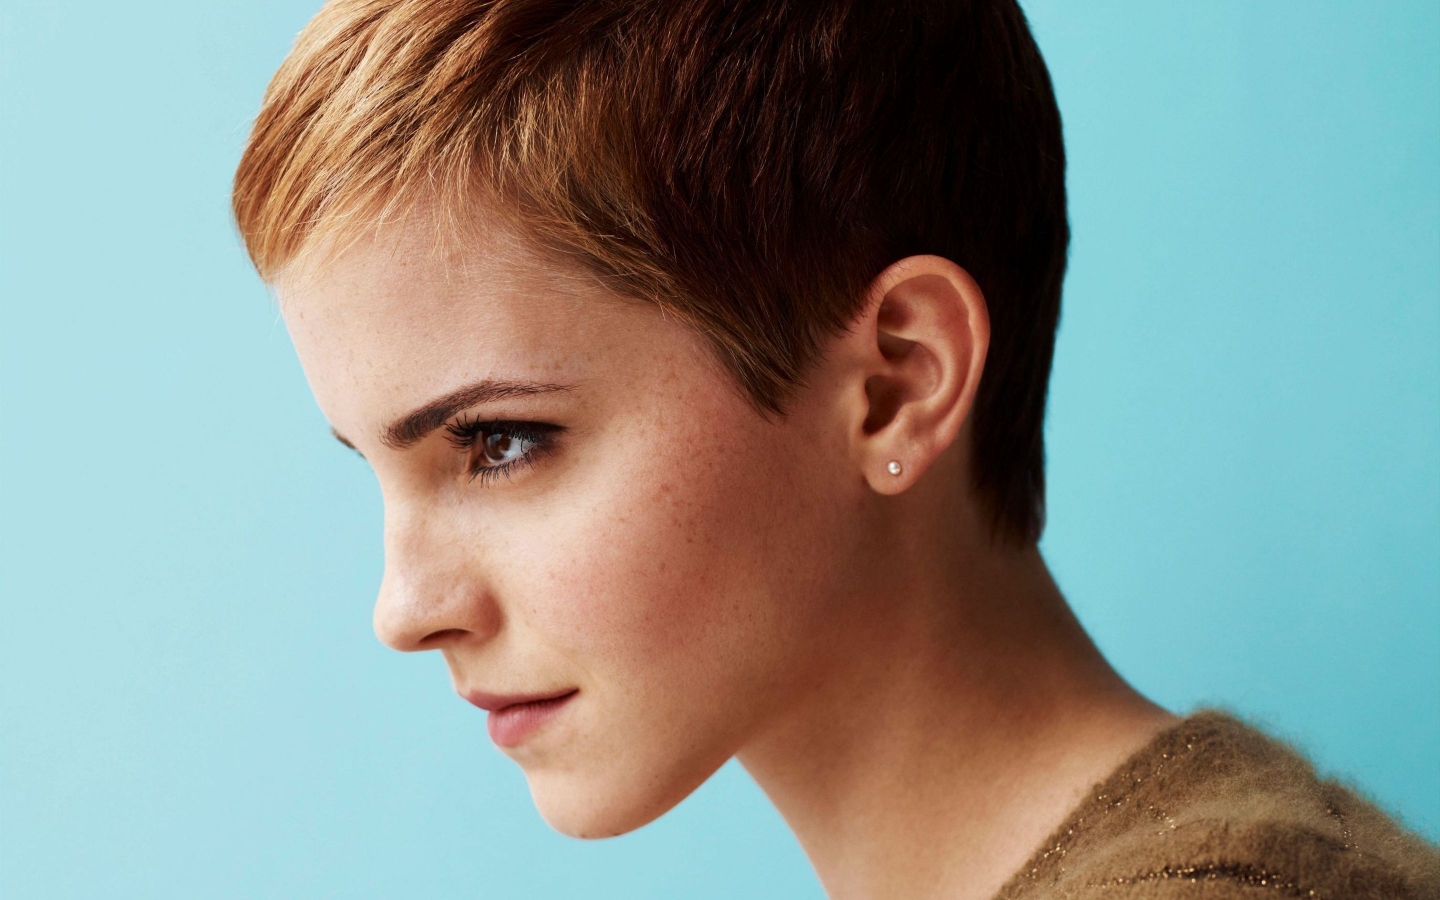 Emma Watson Short Hair for 1440 x 900 widescreen resolution